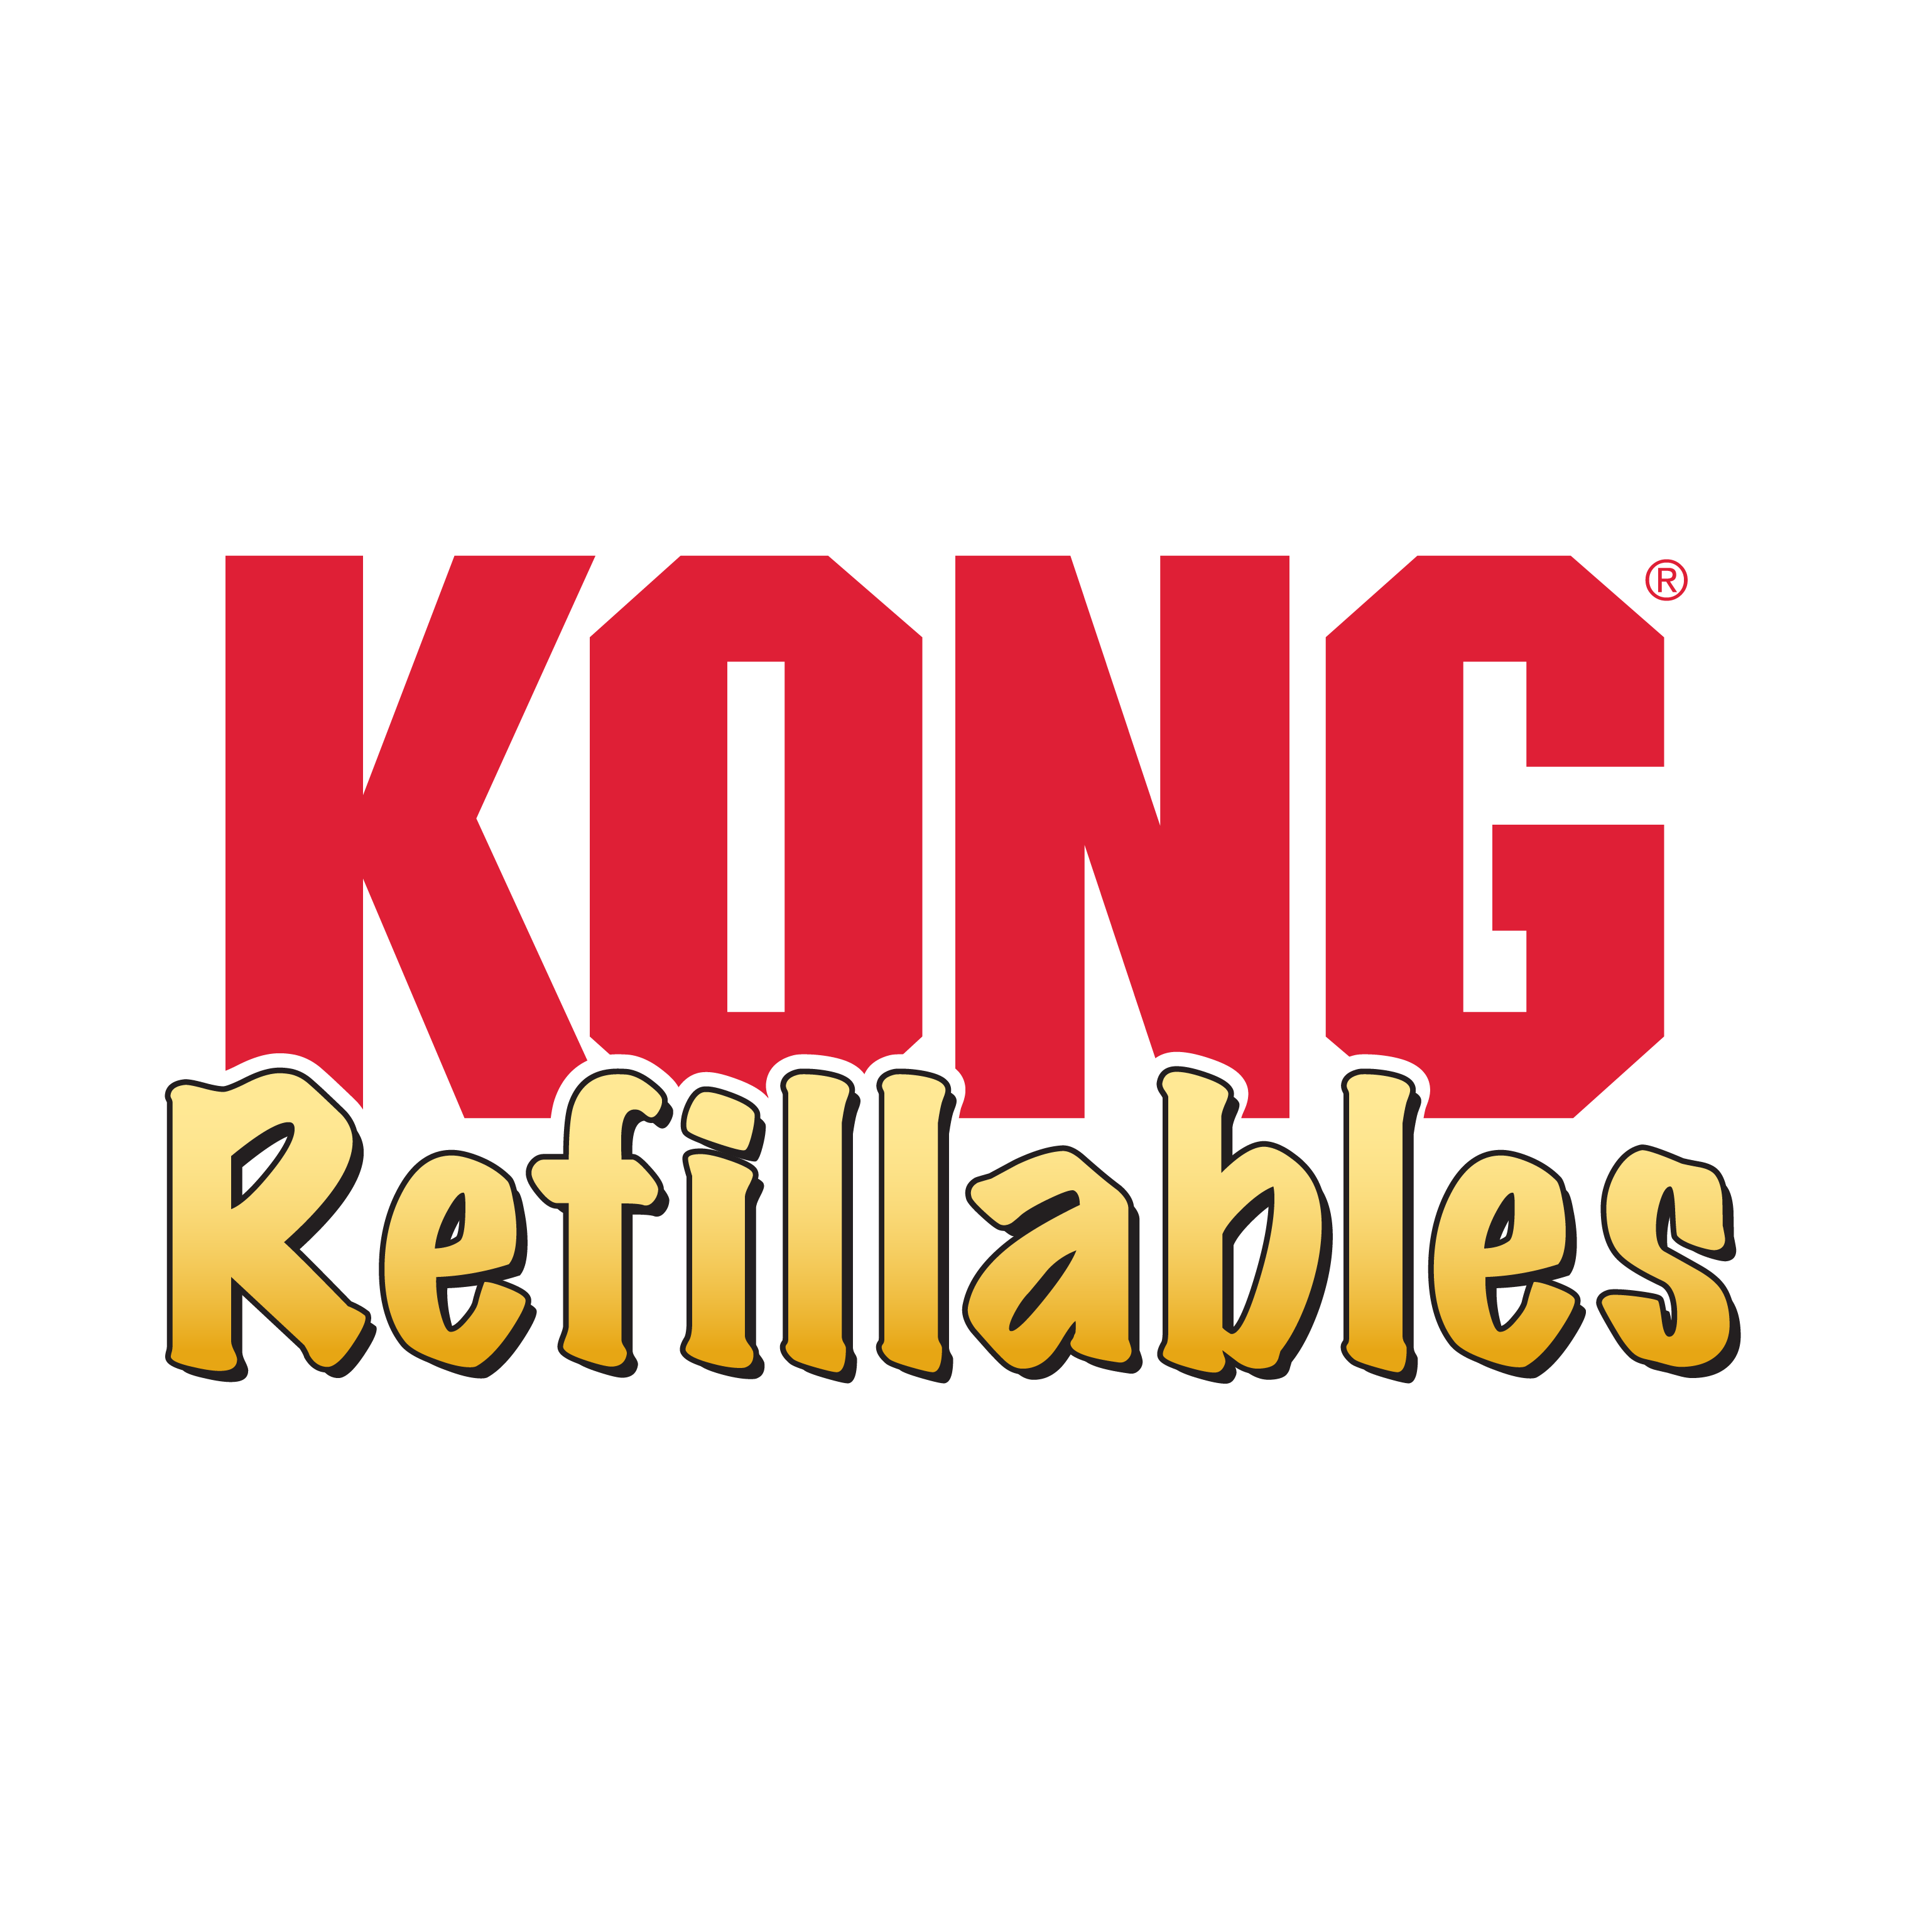 Refillables Turtle alt1 product image